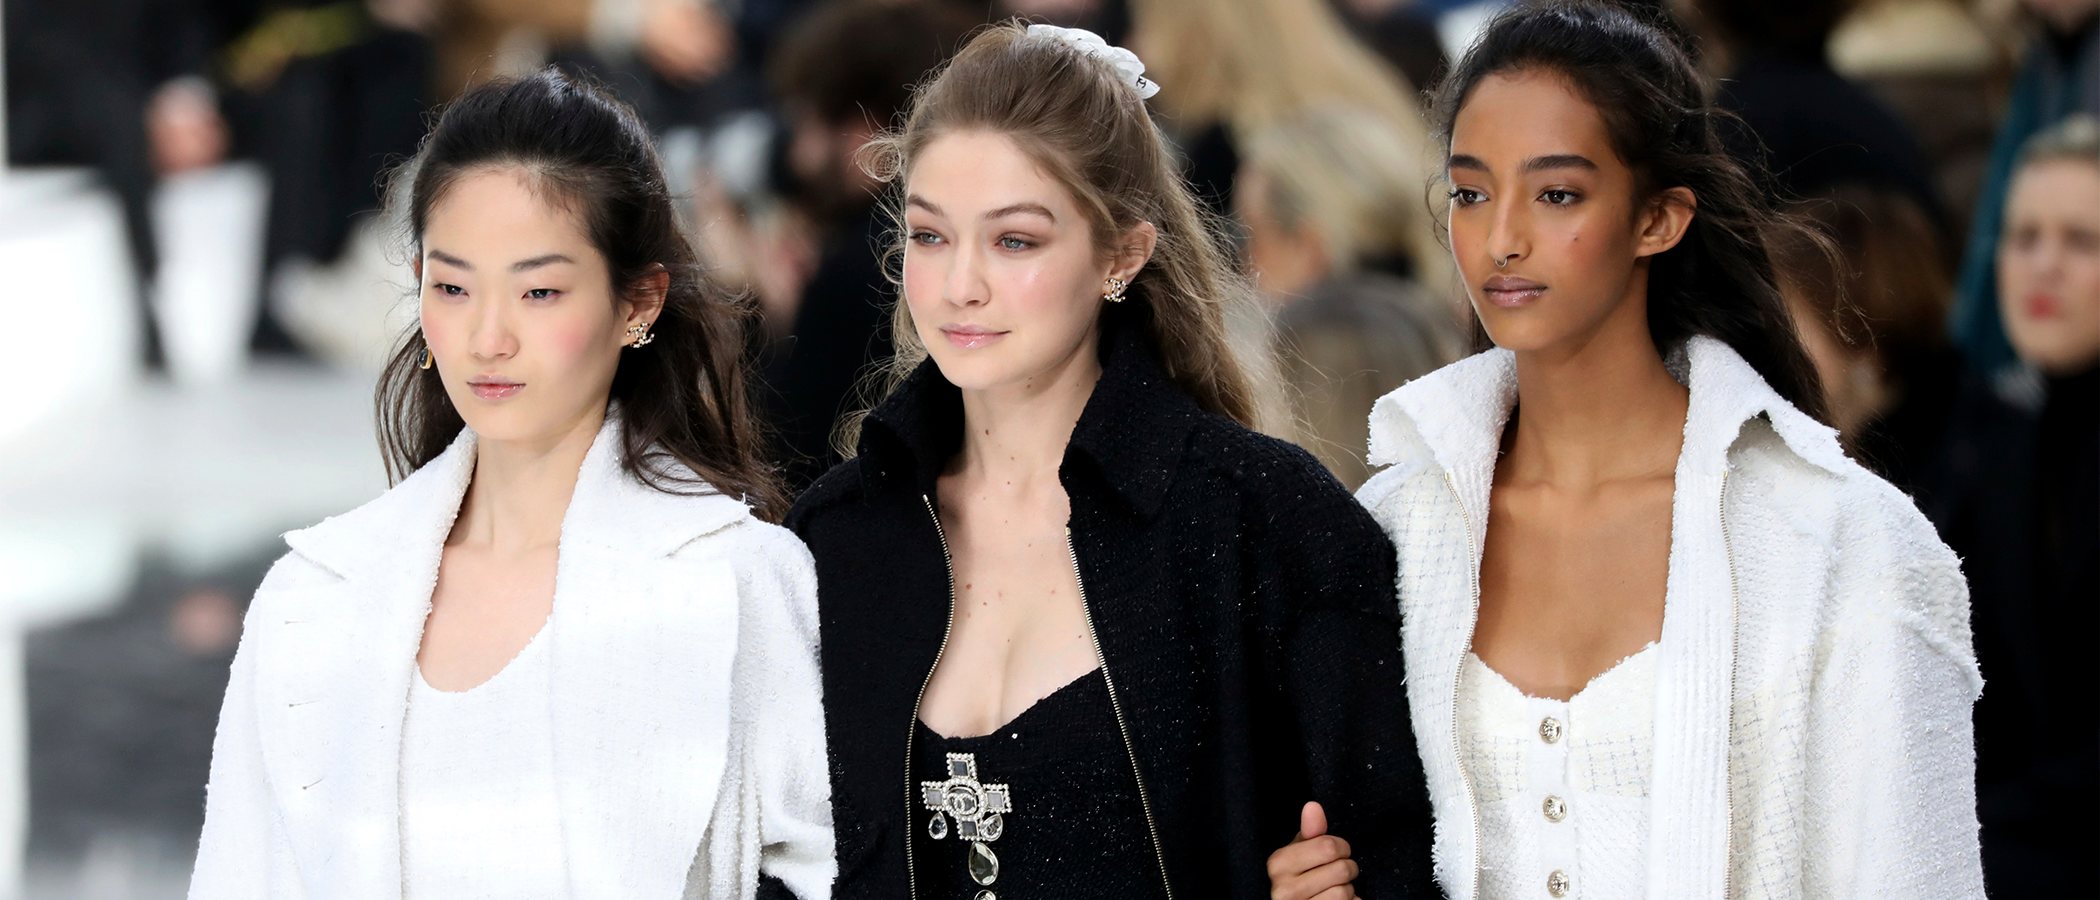 El triángulo amoroso de Chanel llega al Grand Palais con su desfile otoño/invierno 2020-2021